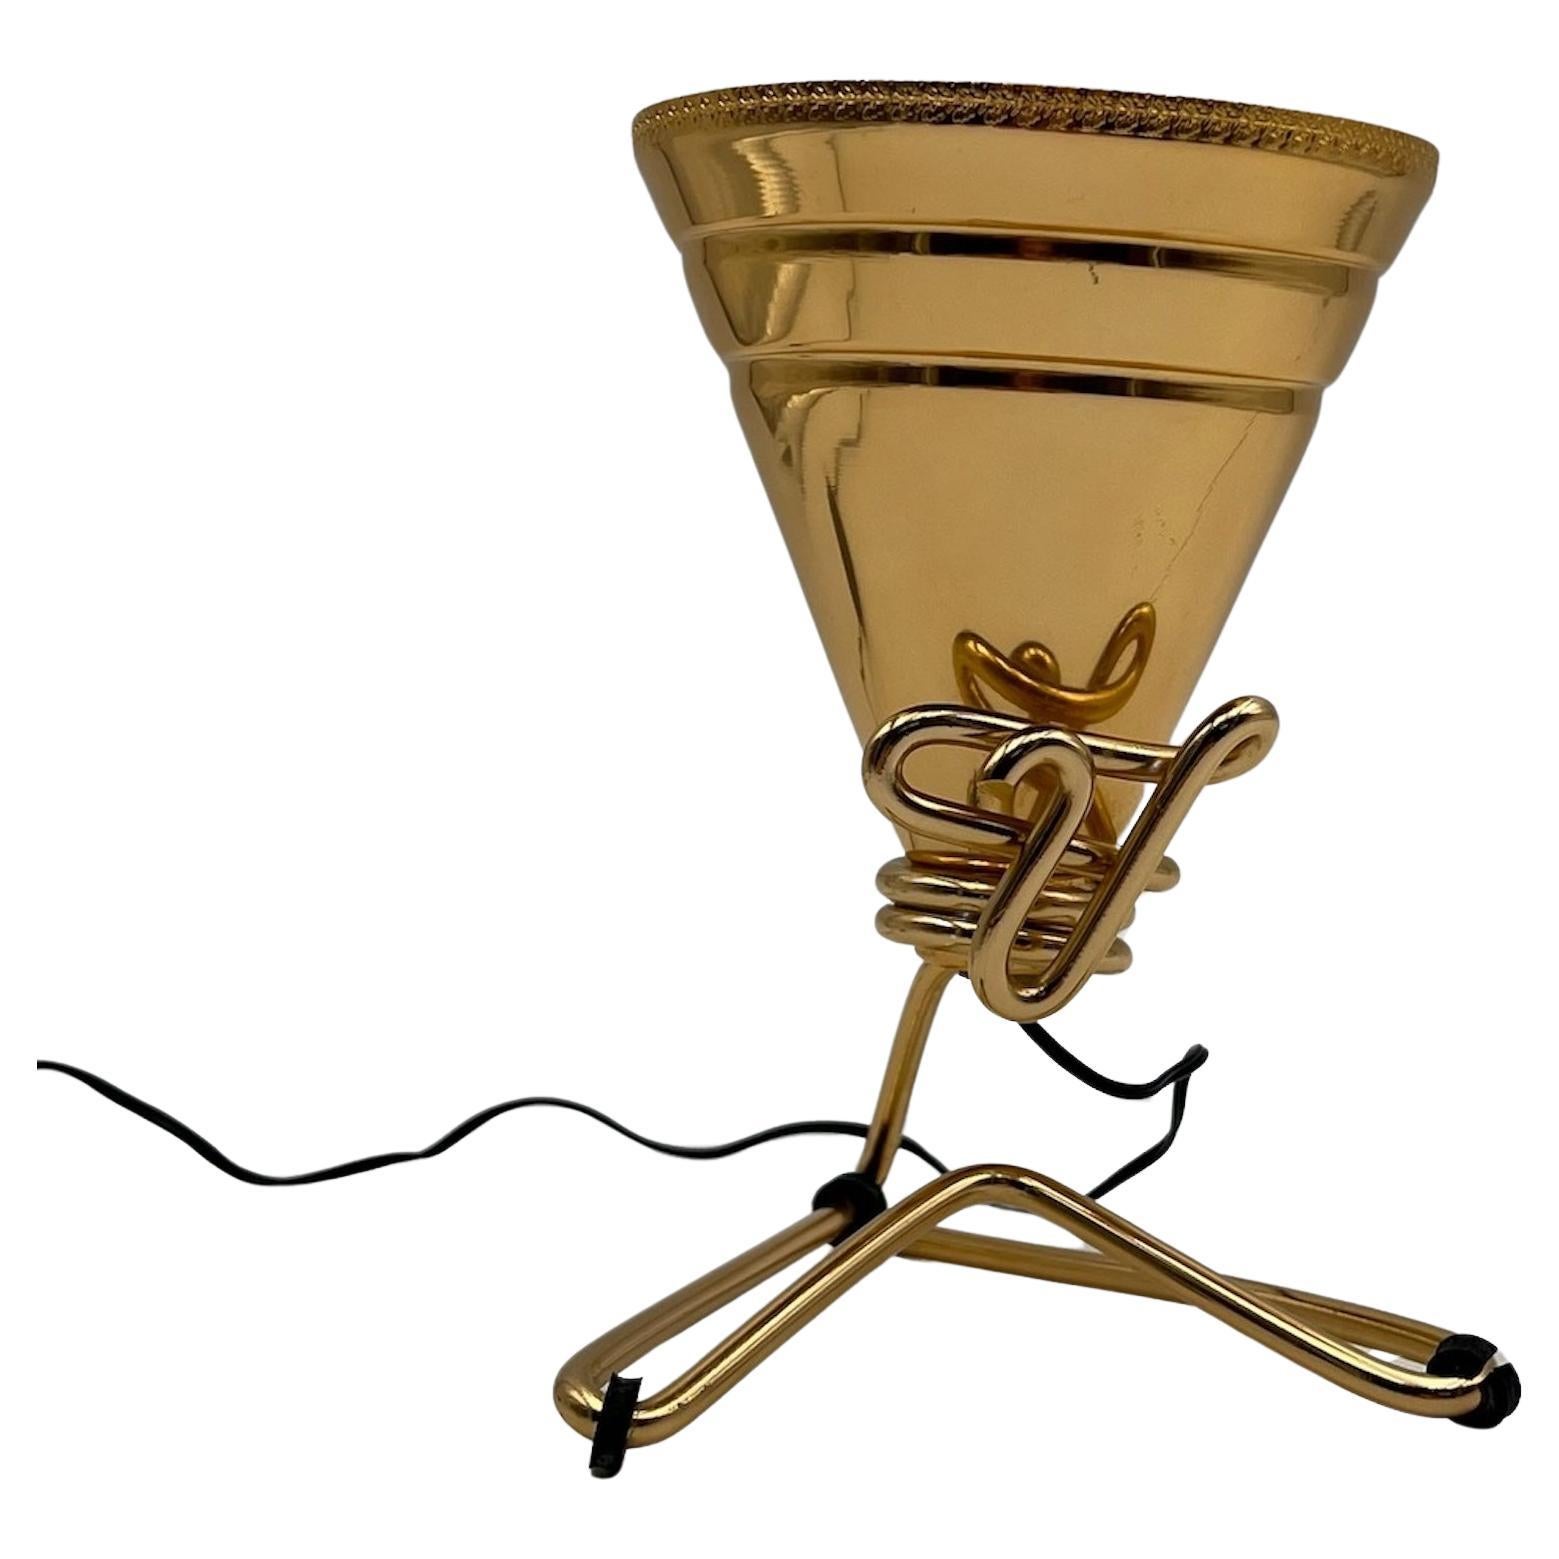 Seltene und ikonische Lampe, die von dem kreativen Genie Ettore Sottsass entworfen und von Rinnovel hergestellt wurde. Unverwechselbarer konischer Lampenschirm aus Aluminium mit einer glänzenden goldenen Farbe, getragen von einem Metallrahmen, der